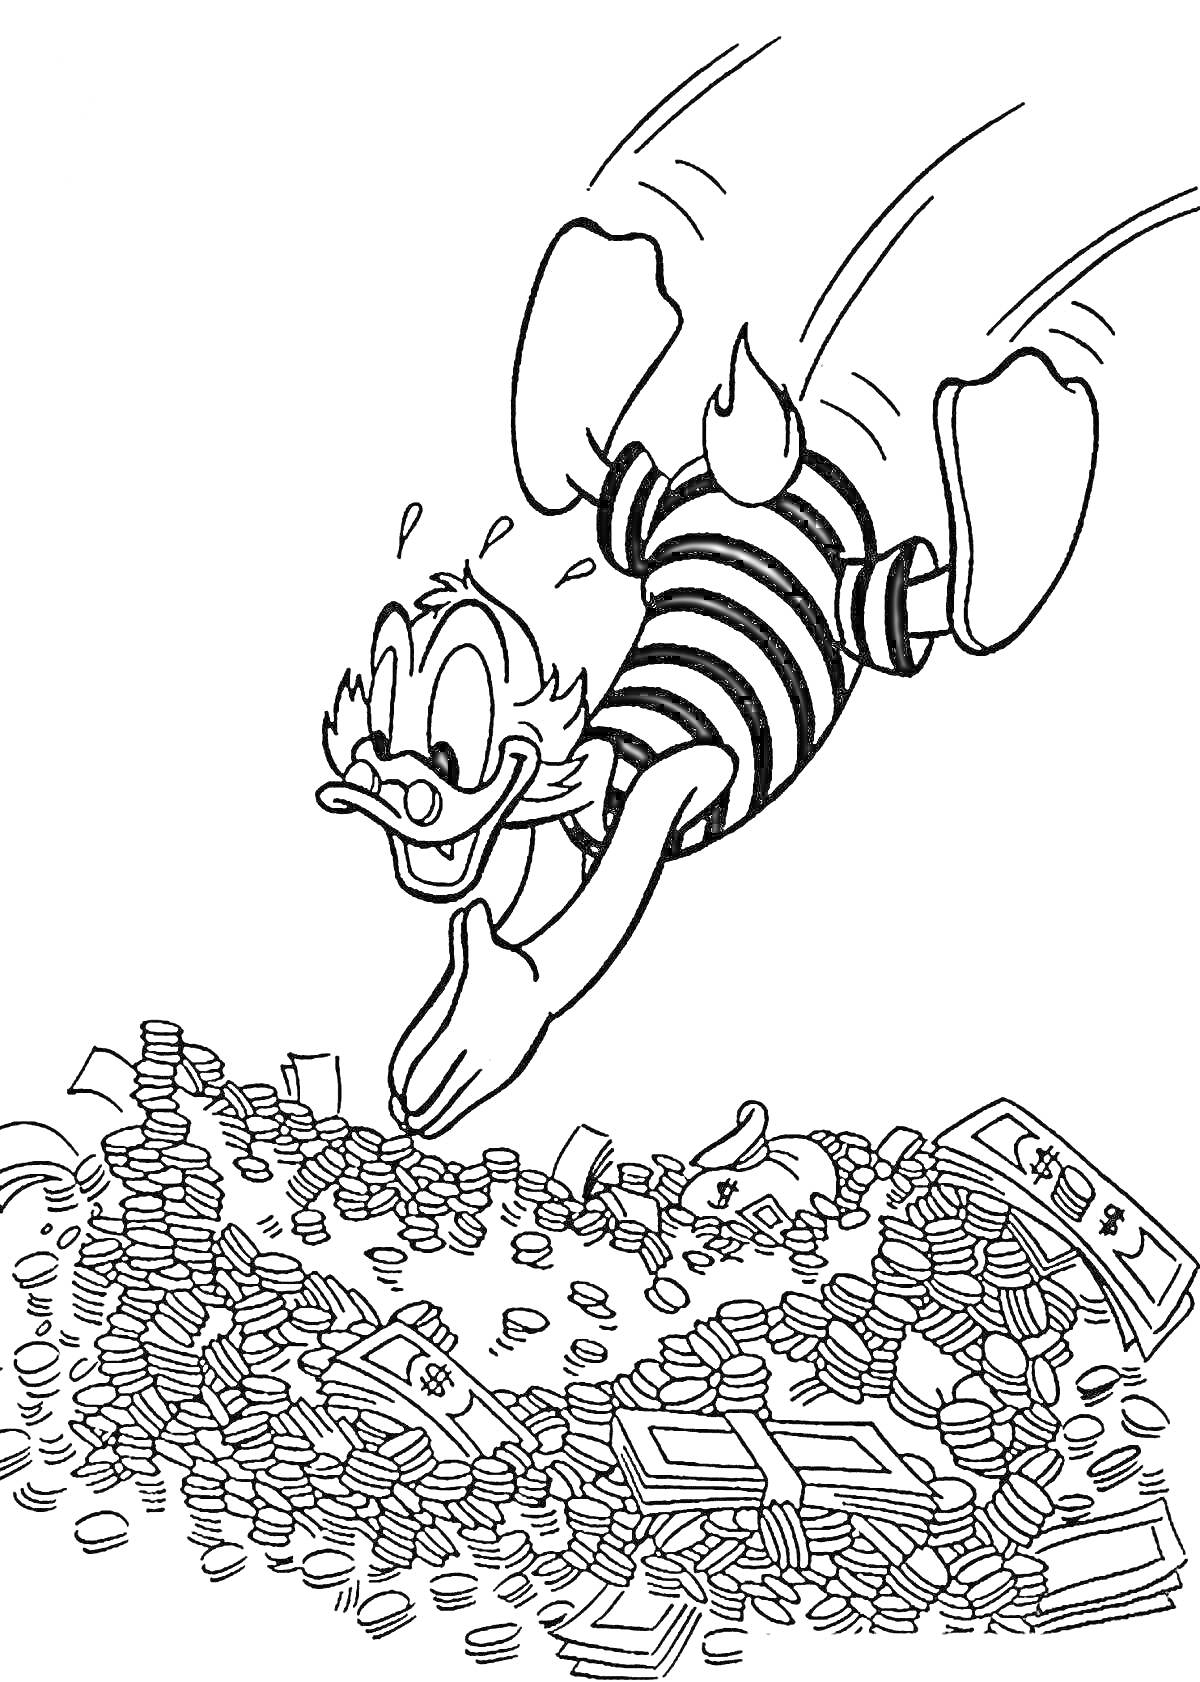  Скрудж Макдак ныряющий в кучу монет и банкнот